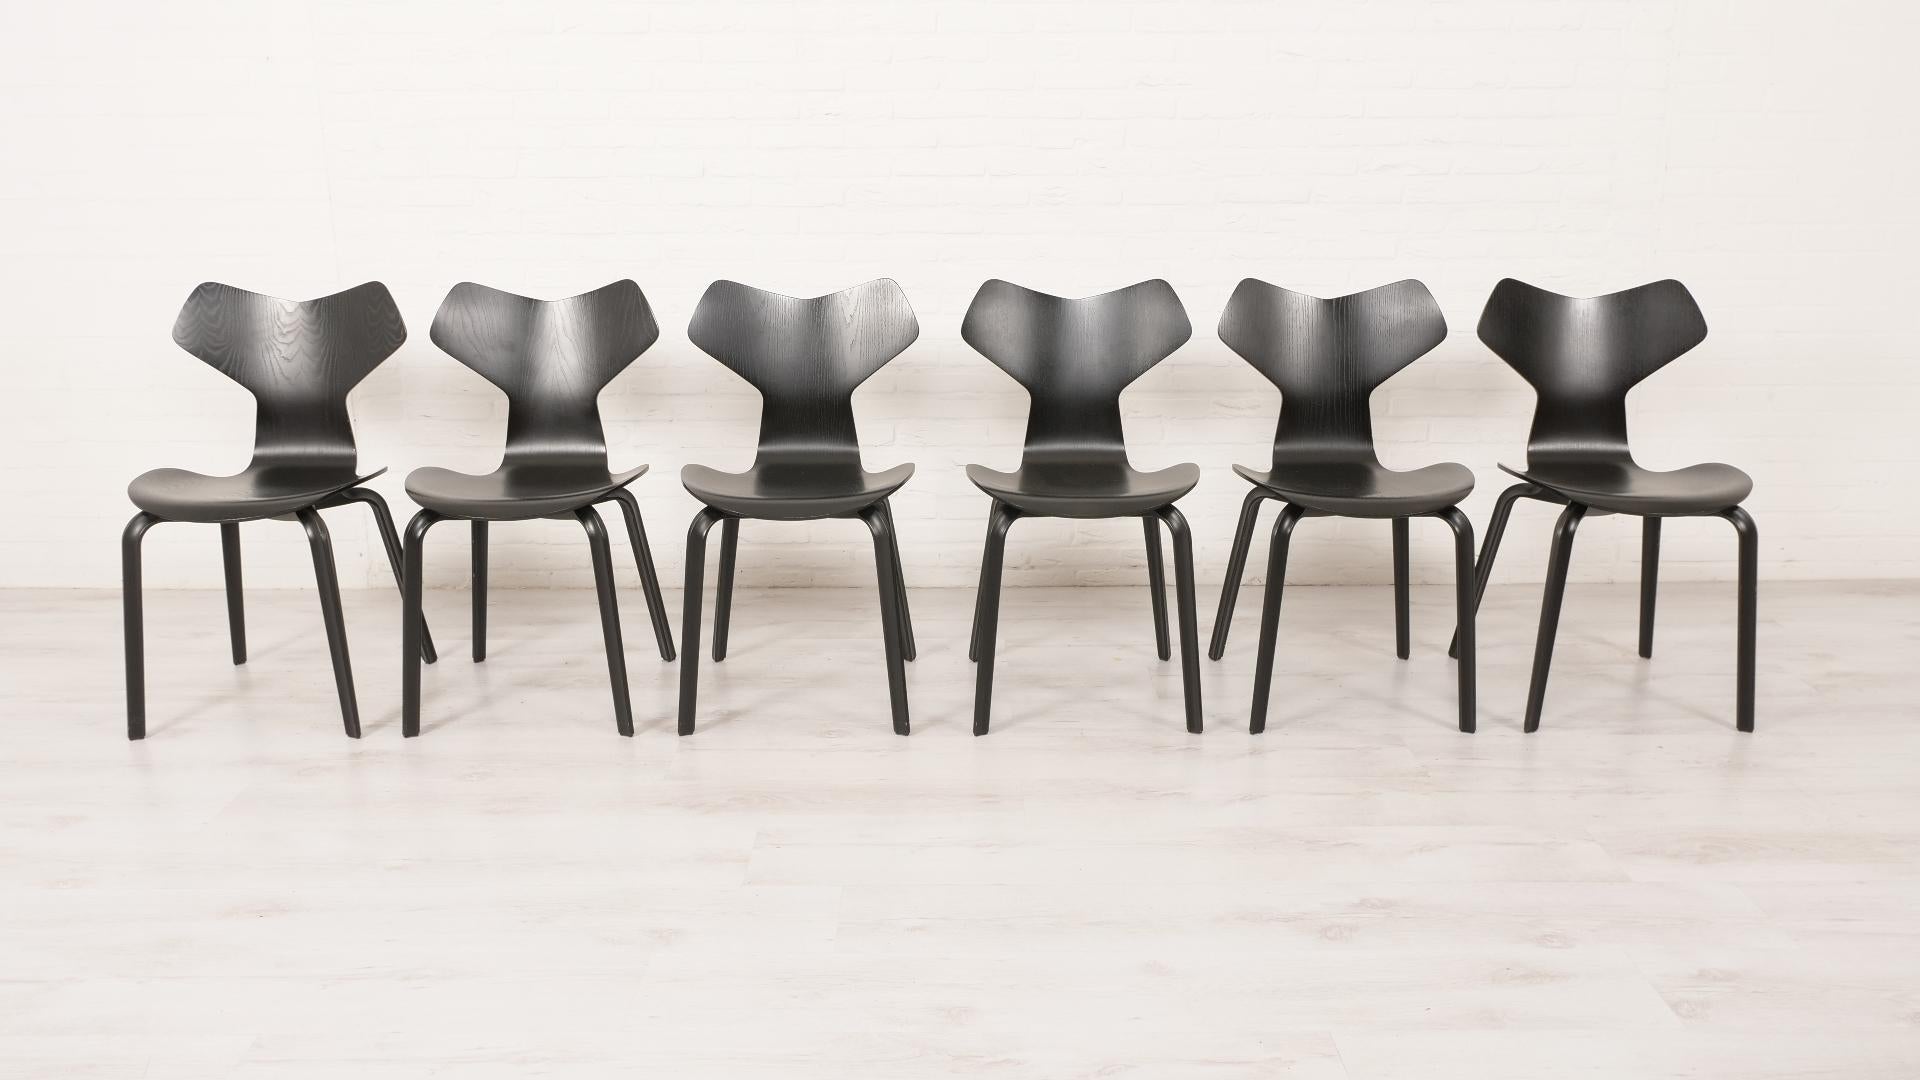 Ces magnifiques chaises de salle à manger ont été conçues par Arne Jacobsen pour Fritz Hansen en 1957. Ce modèle a reçu le numéro de type 3130. La même année, cette conception a remporté le prix Grand Prix lors de la Triennale de Milan et la